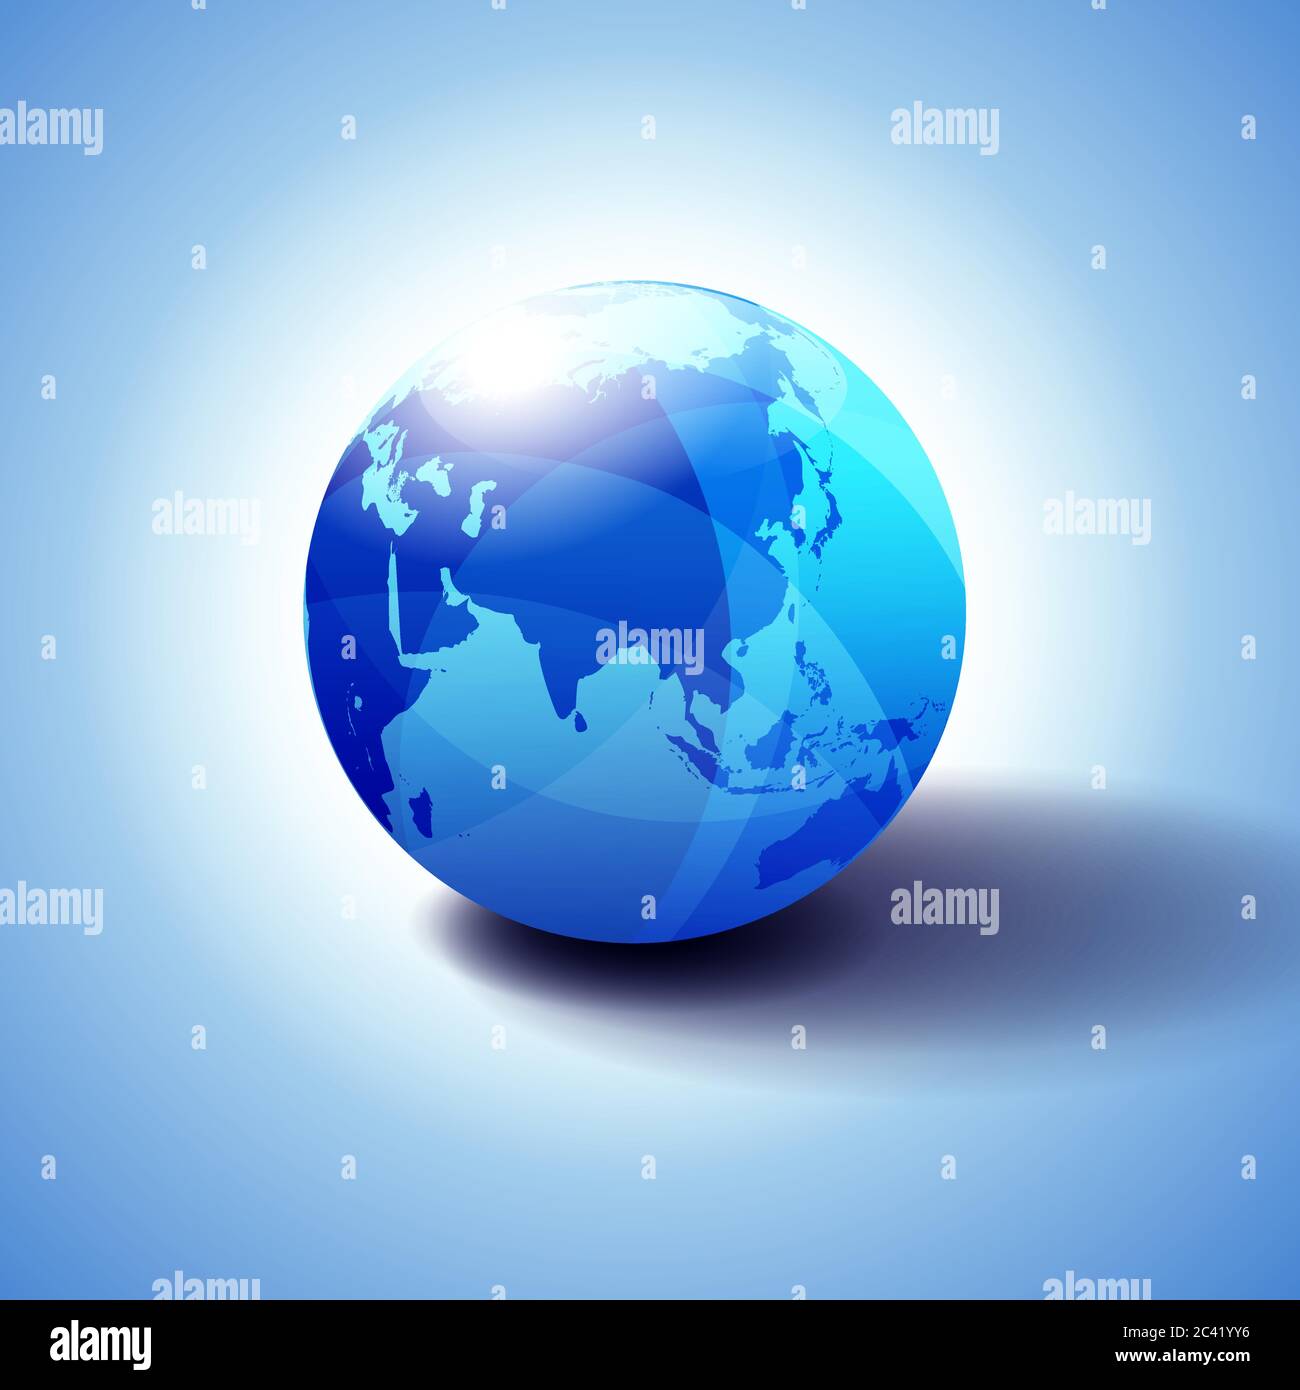 Chine, Asie et Japon Global World Globe Icon illustration 3D, sphère brillante, brillante avec carte globale en bleu subtil donnant une sensation de transparence Illustration de Vecteur